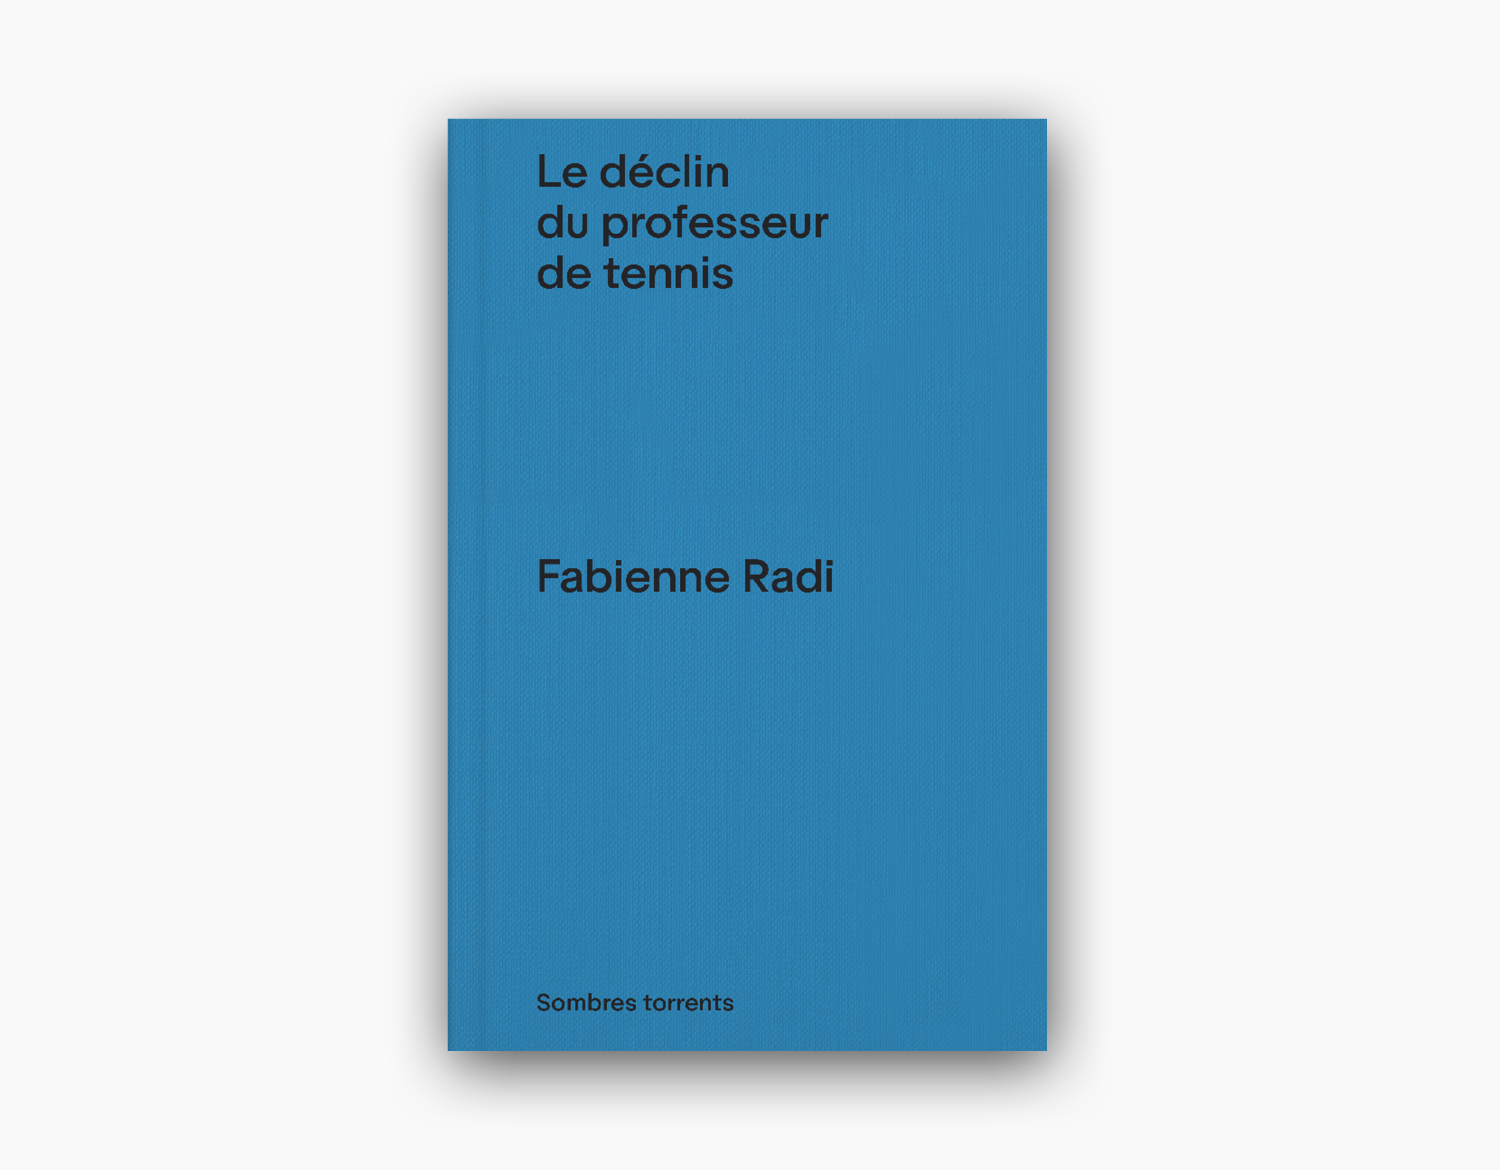 Le déclin du professeur de tennis par Fabienne Radi